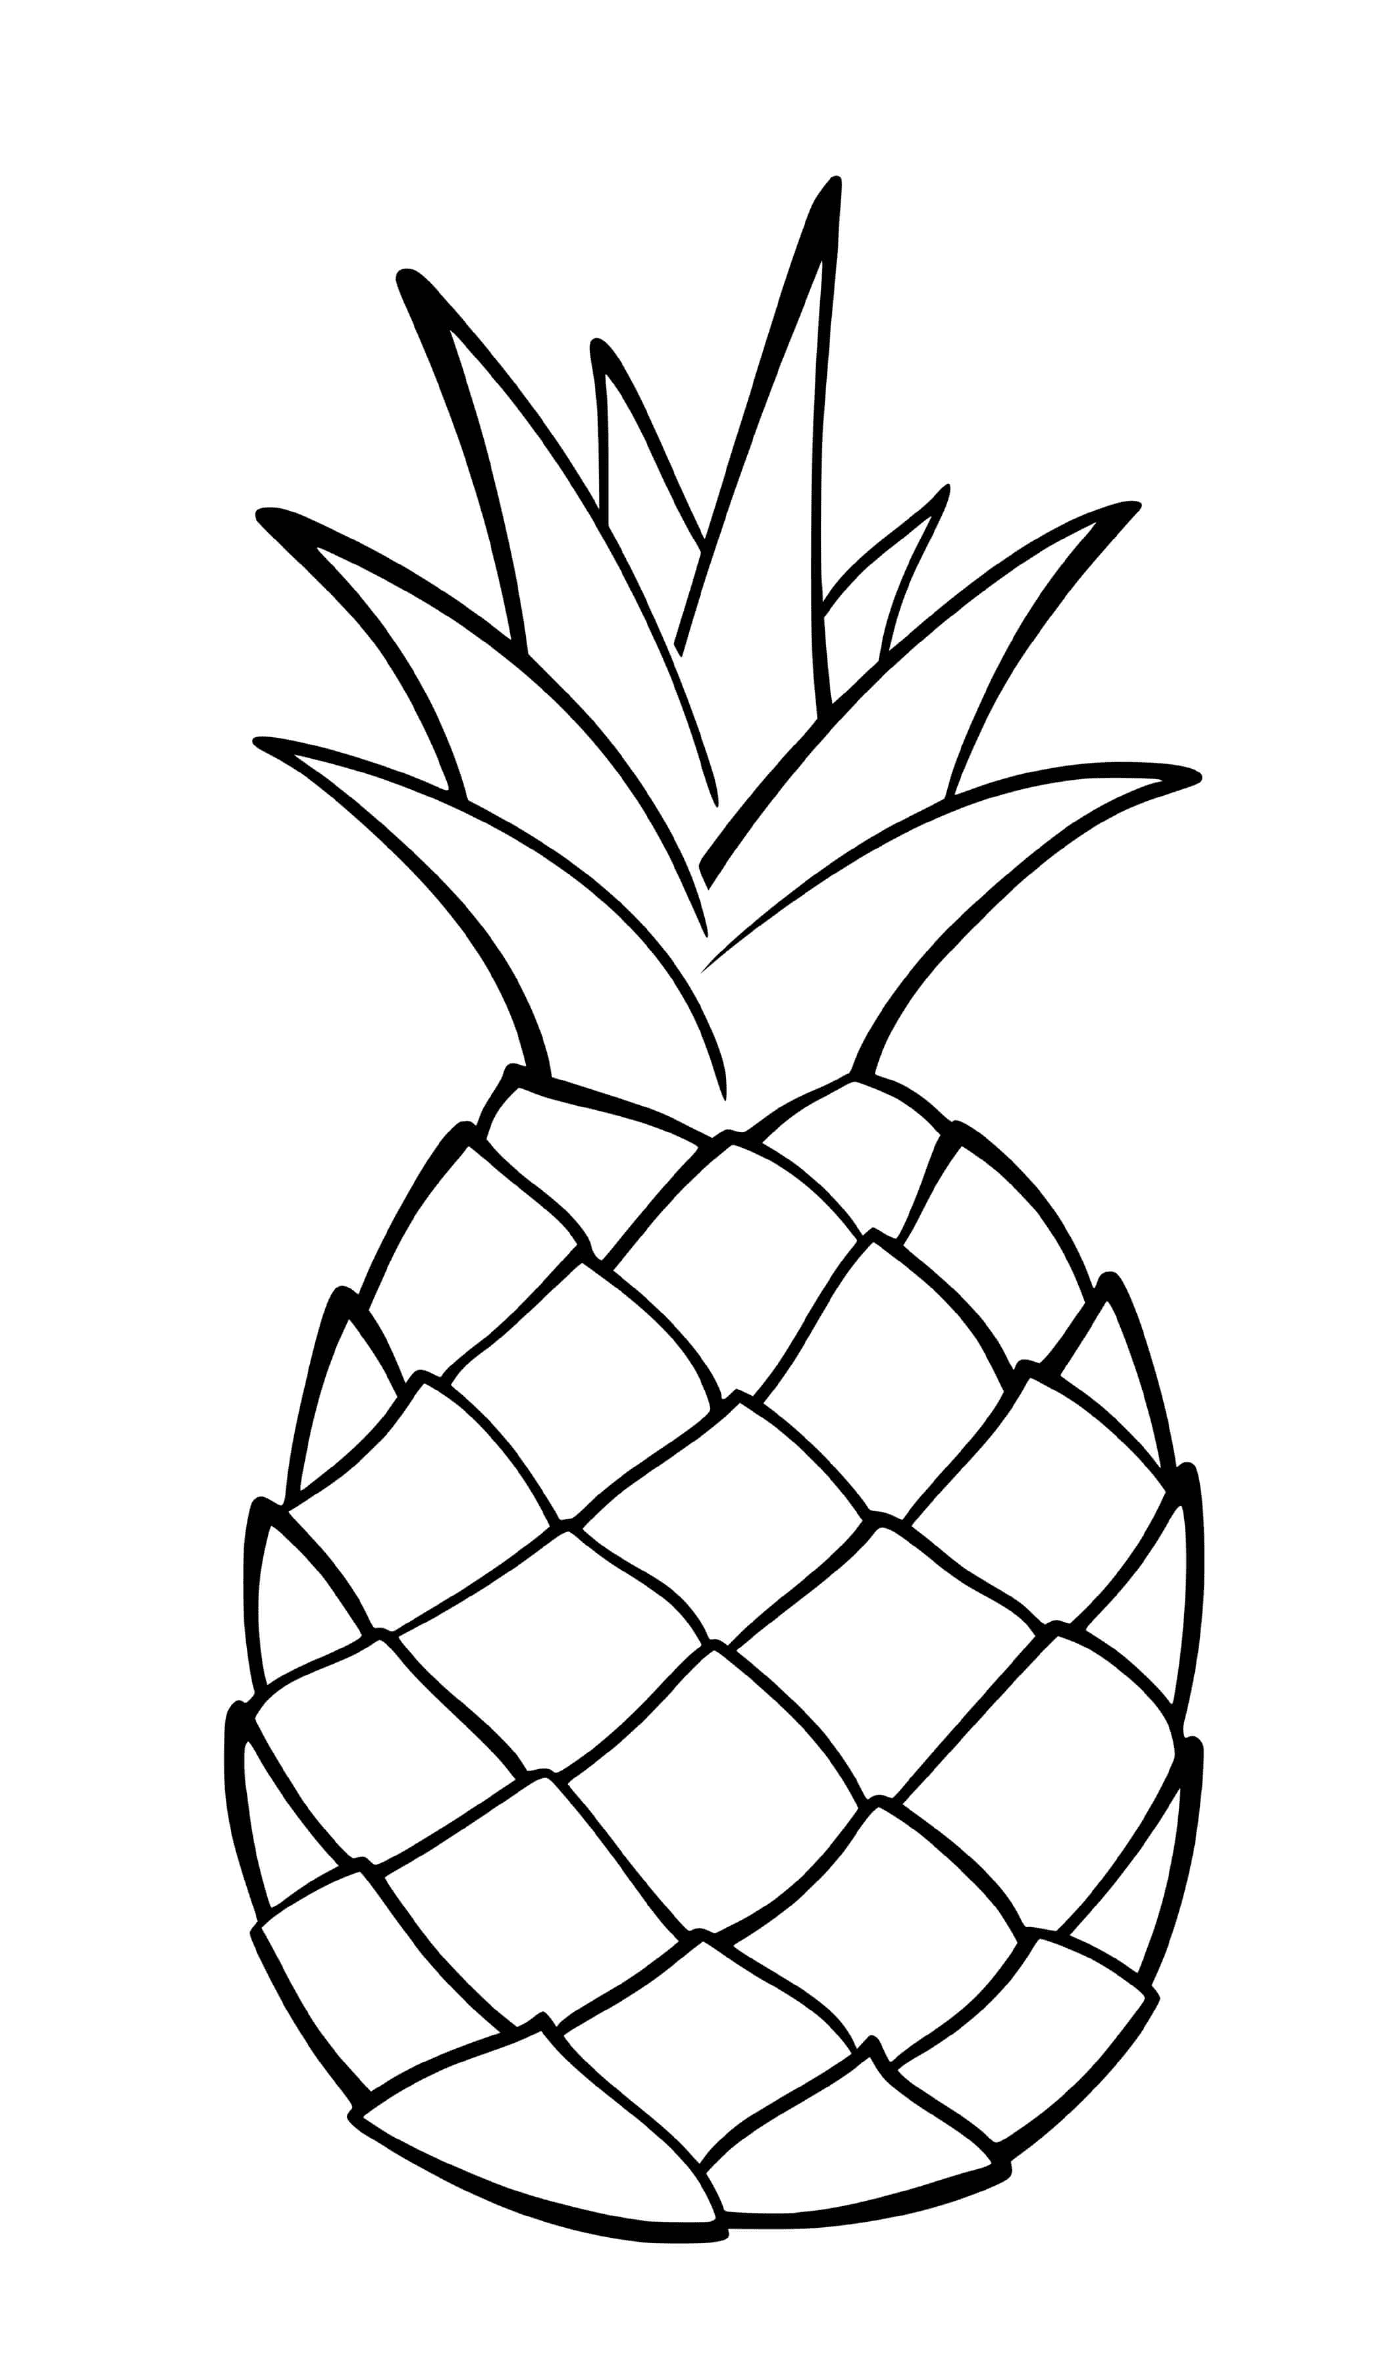   Un fruit exotique appelé ananas 